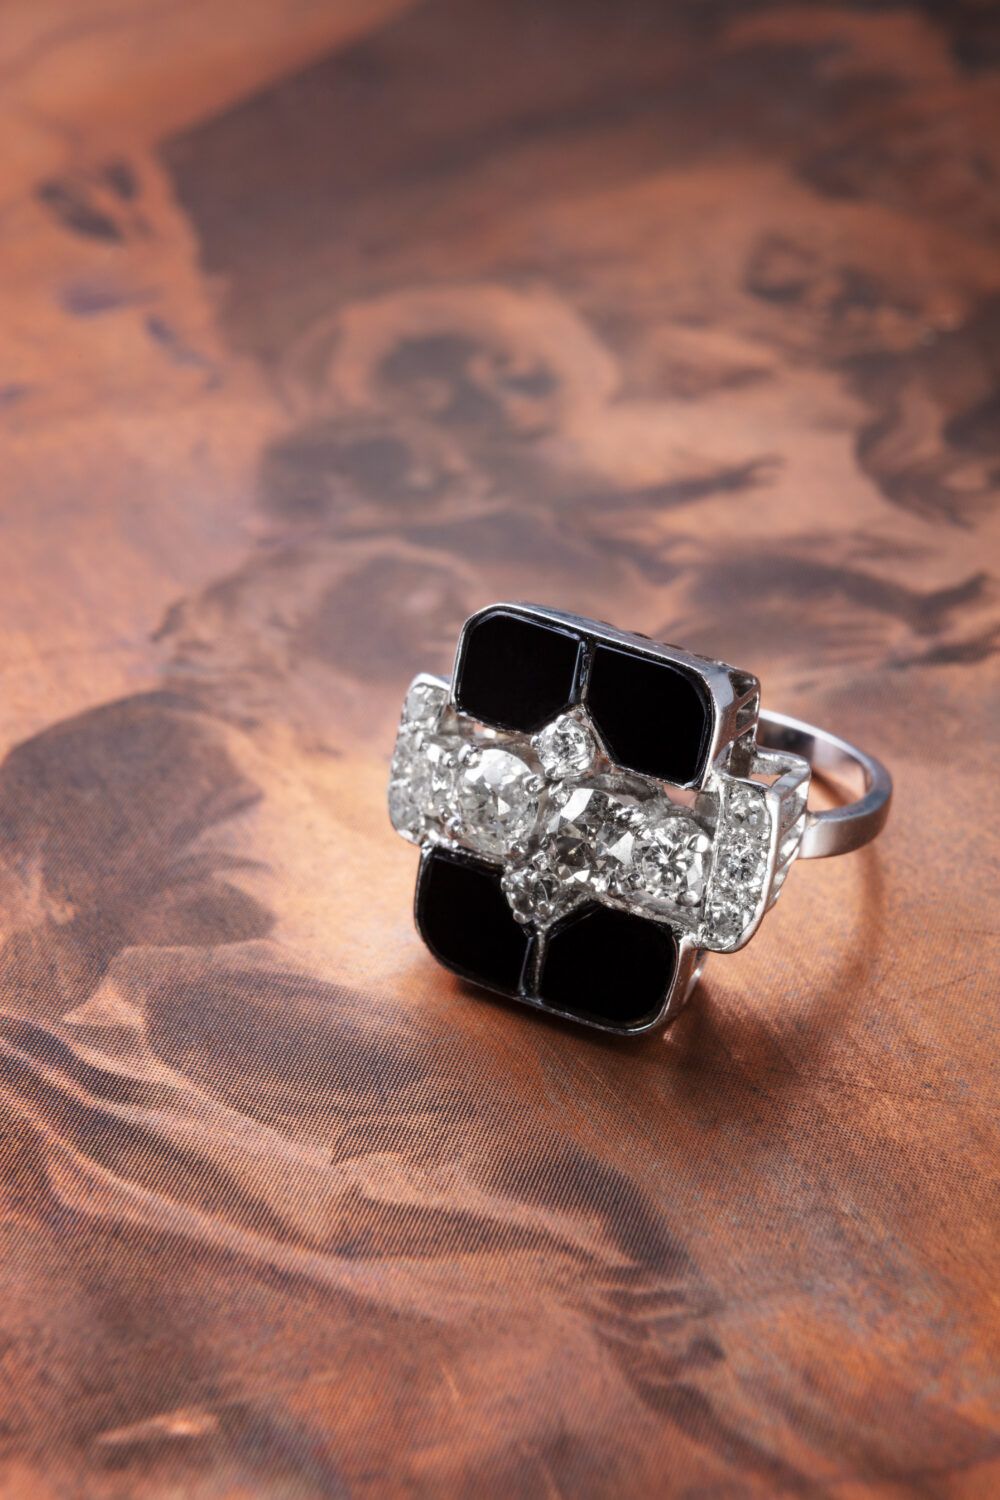 Werbefotografie Produktfoto eines silbernen Rings mit Diamanten, präsentiert auf einer alten Druckerplatte, Oscar Steffen Jewelry, erstellt von Photostudio Luzern